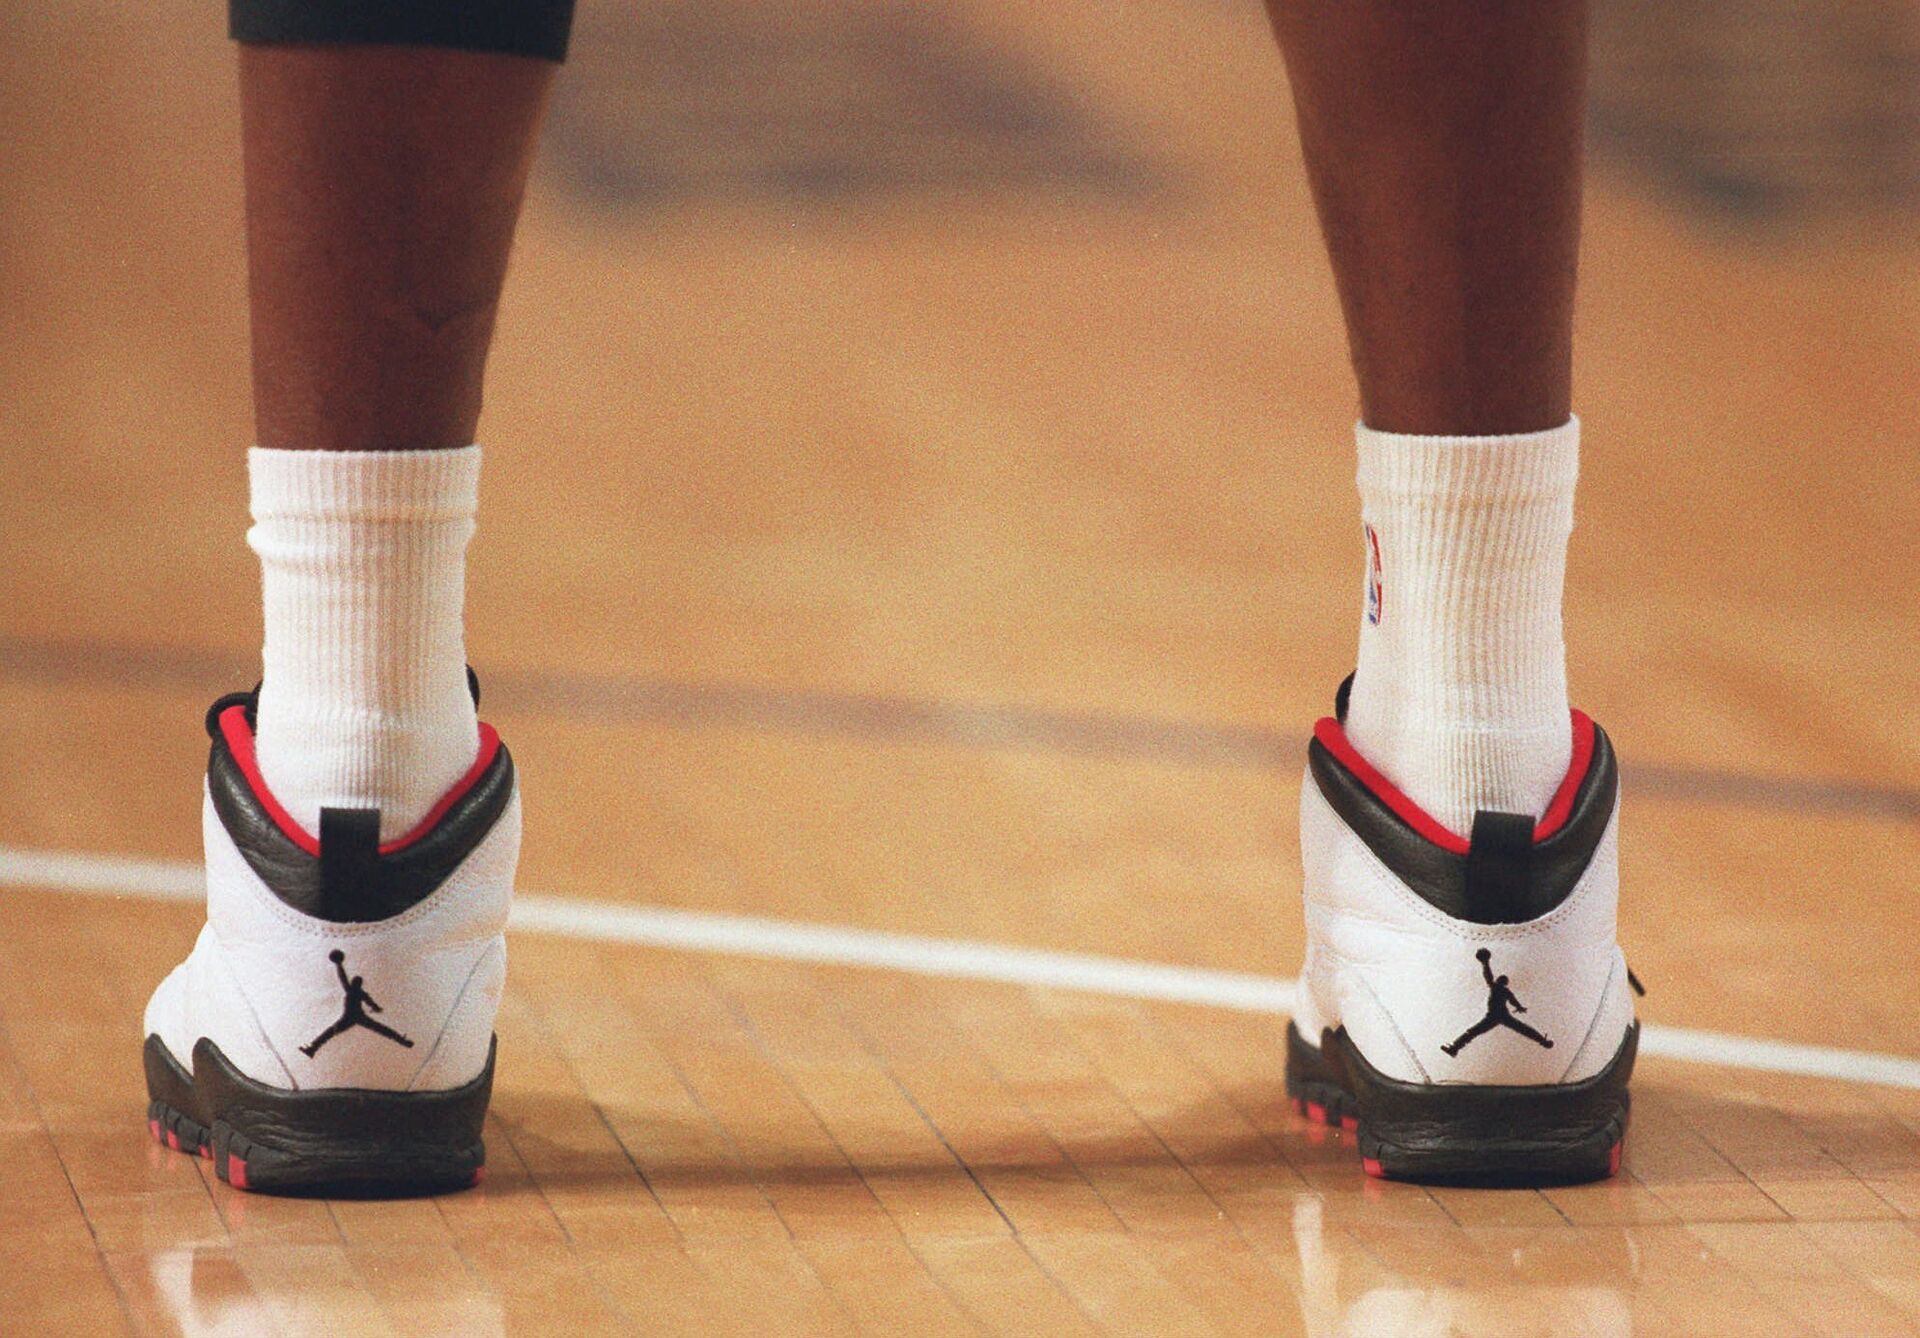 Американский баскетболист Майкл Джордан в фирменных кроссовках Nike Air Jordan во время игры. 1995 год - РИА Новости, 1920, 22.01.2021